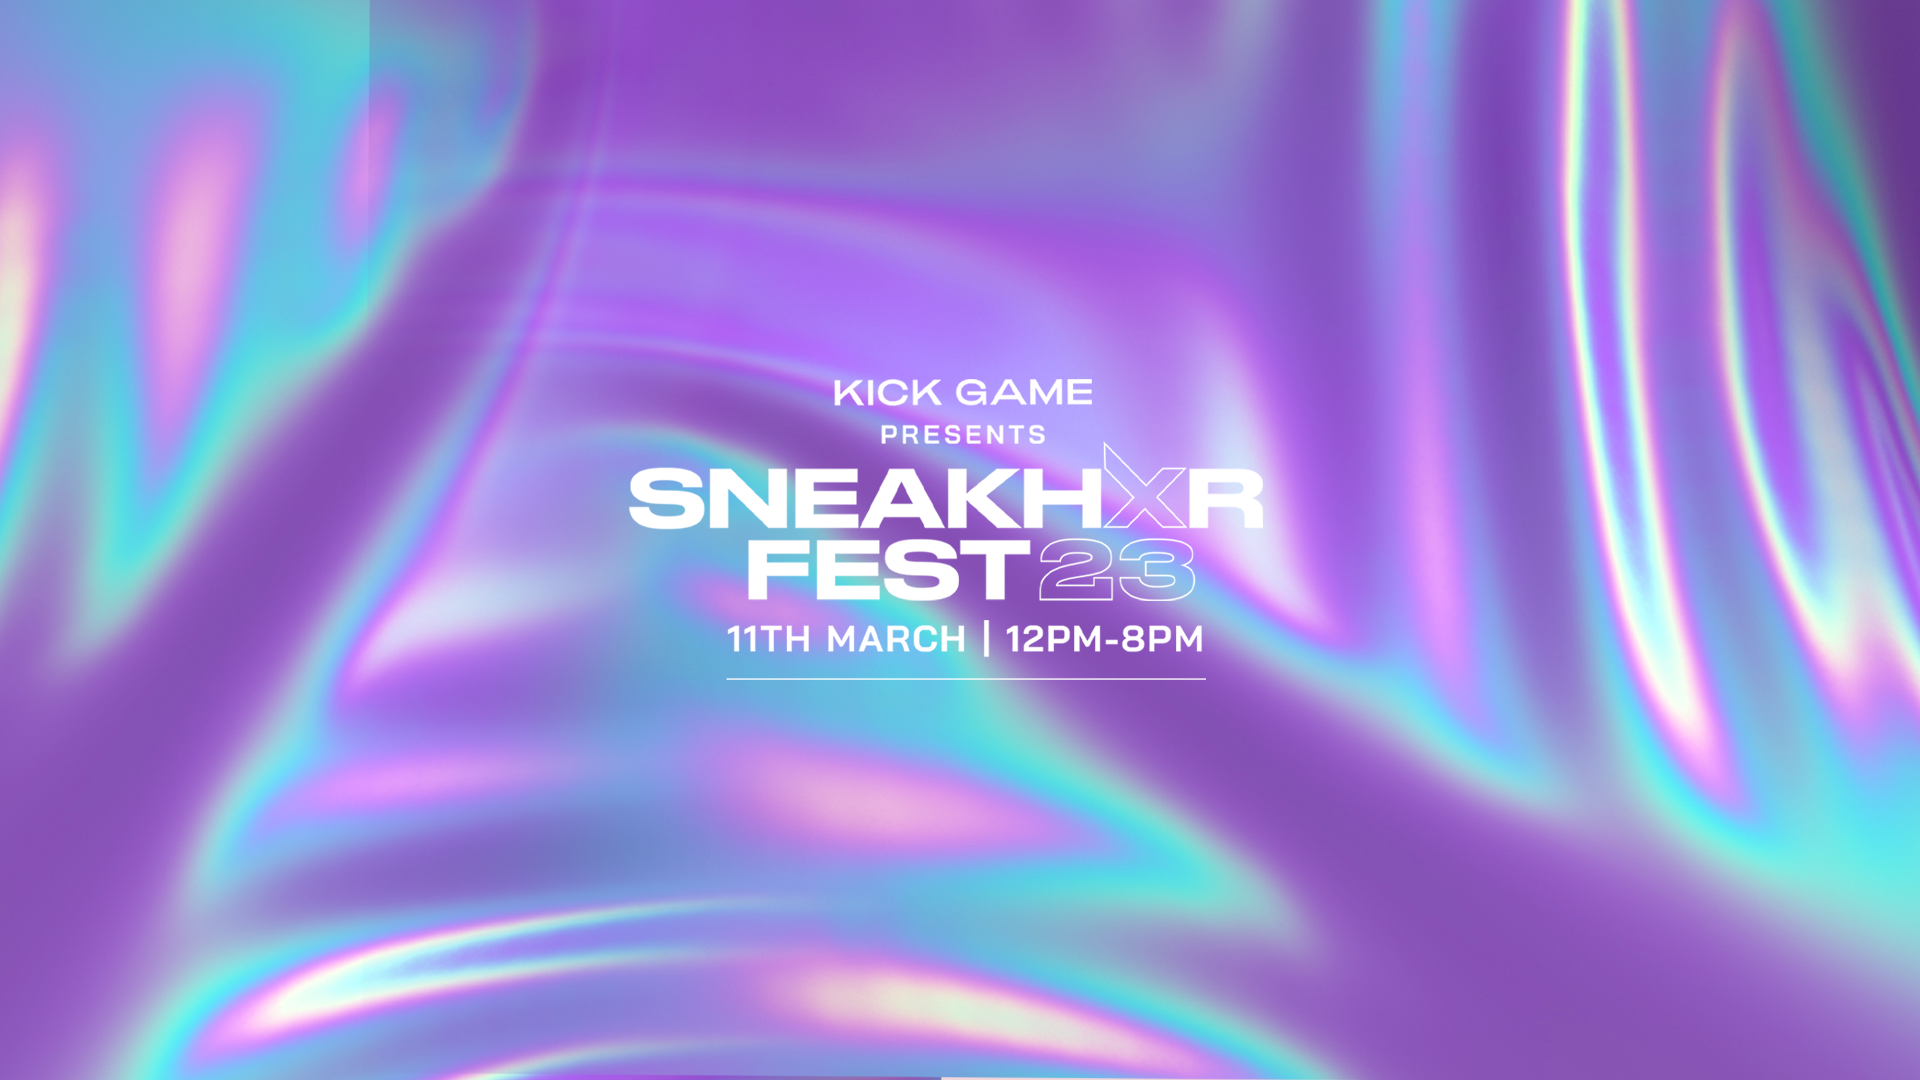 Kick Game’s SneakHxr Fest is Back!